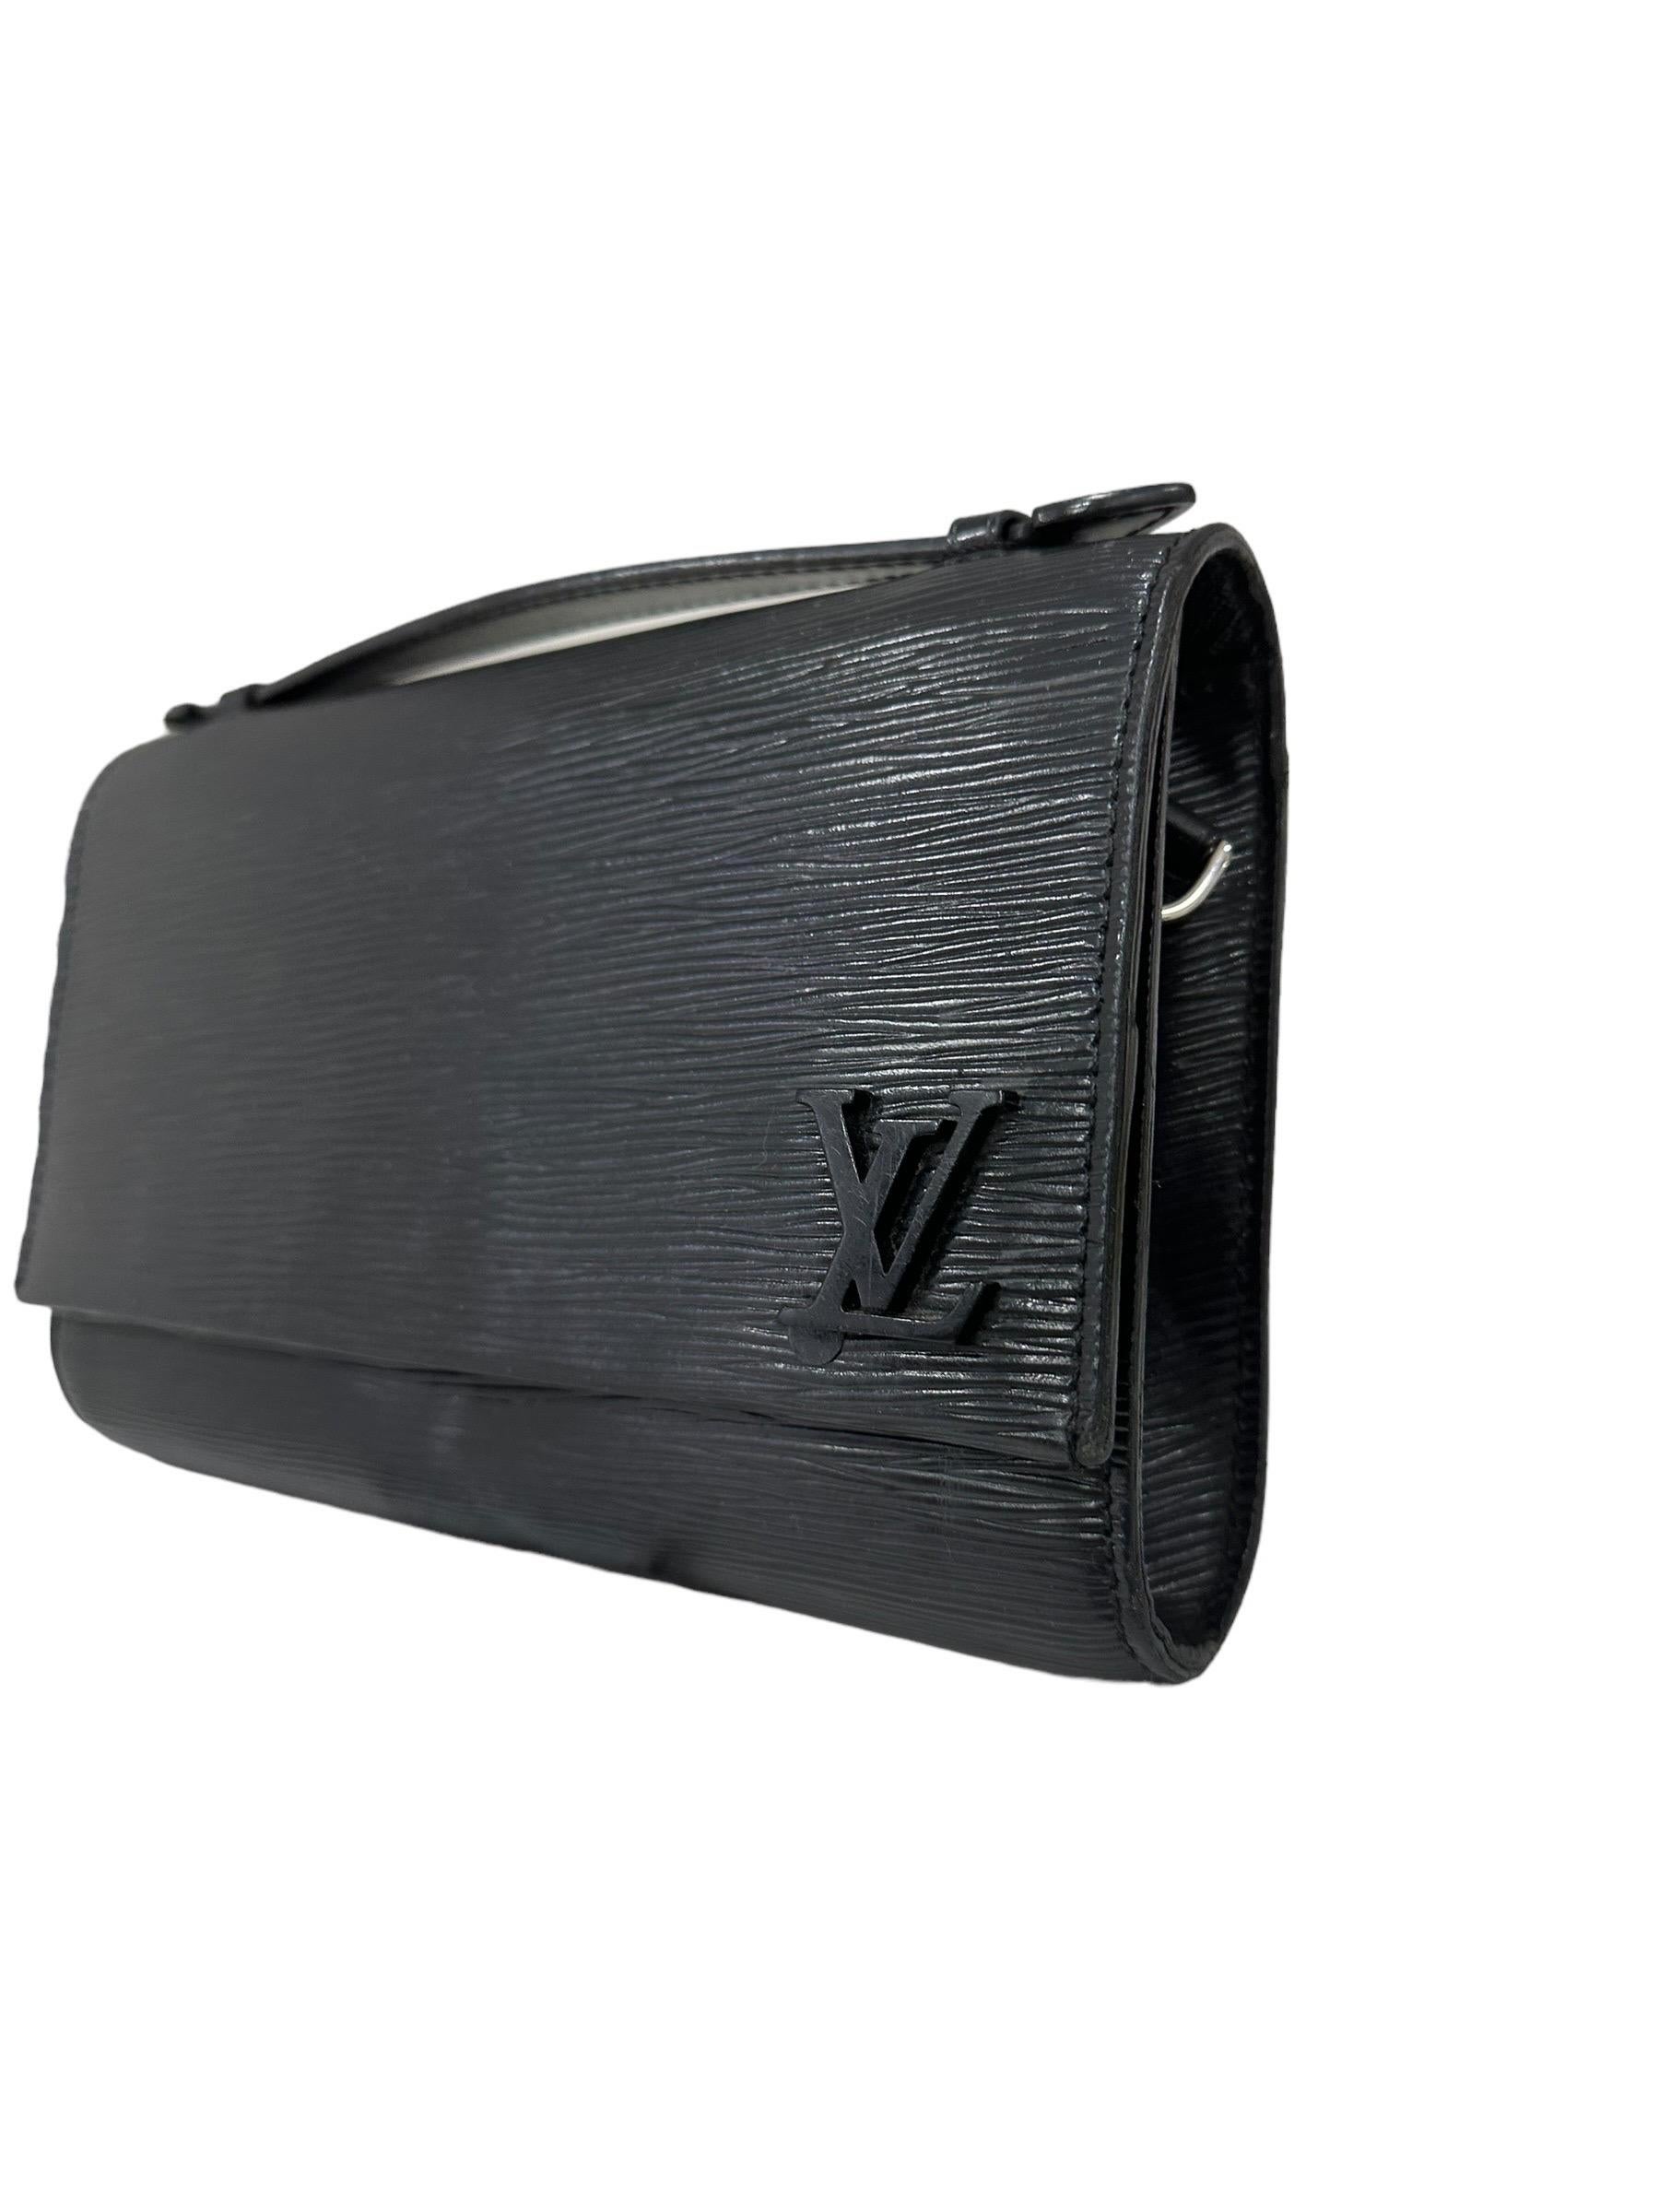 Borsa firmata Louis Vuitton, modello Clery, realizzata in pelle epi nera con hardware neri. Dotata di una patta frontale con chiusura a bottone calamitato, internamente rivestita in tessuto nero, capiente per l’essenziale. Munita di un manico